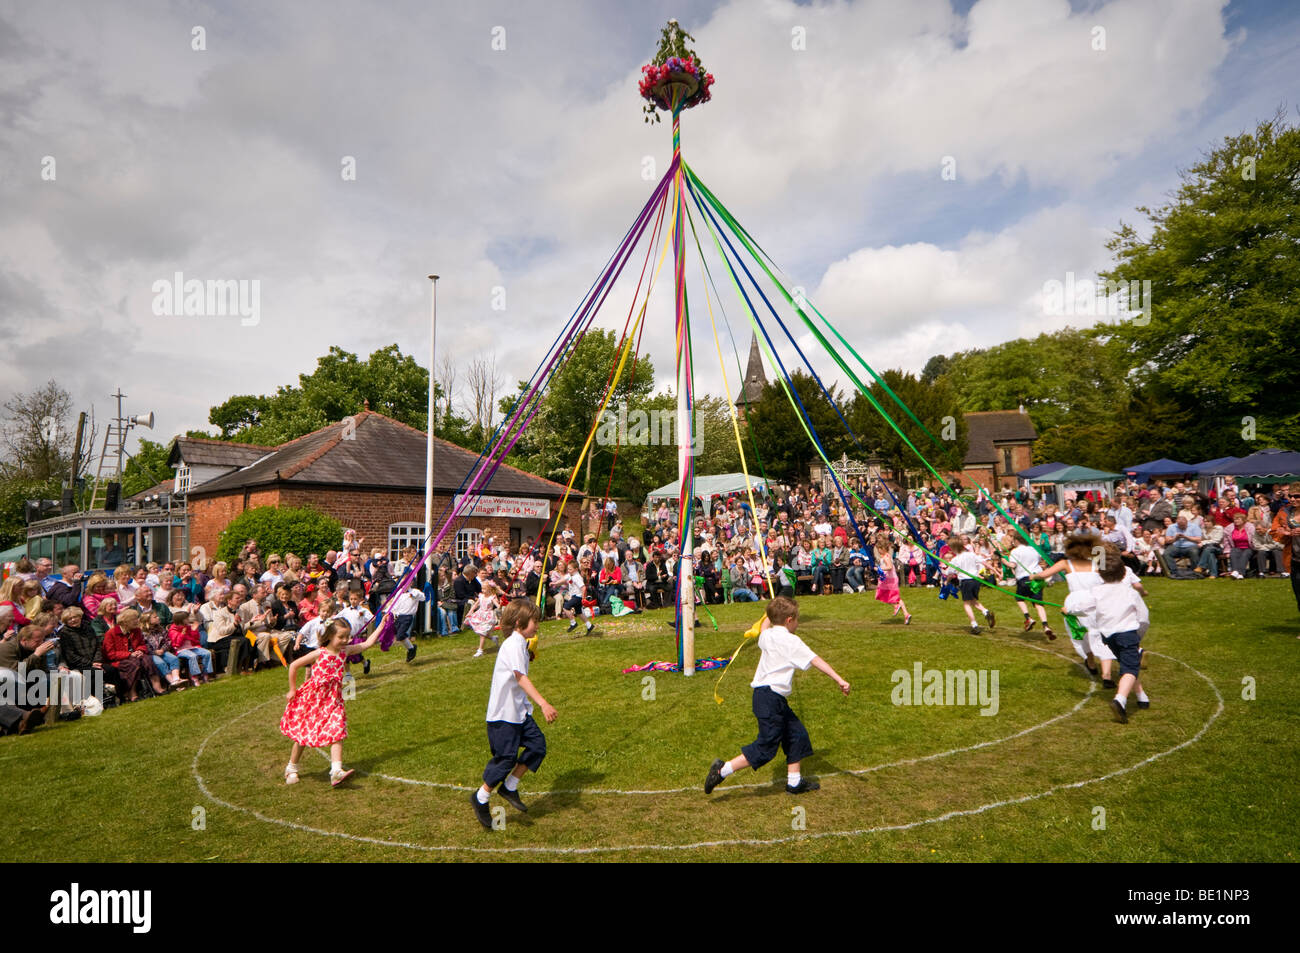 Les enfants effectuant un Maypole Dance, Whitegate, Cheshire, England, UK Banque D'Images